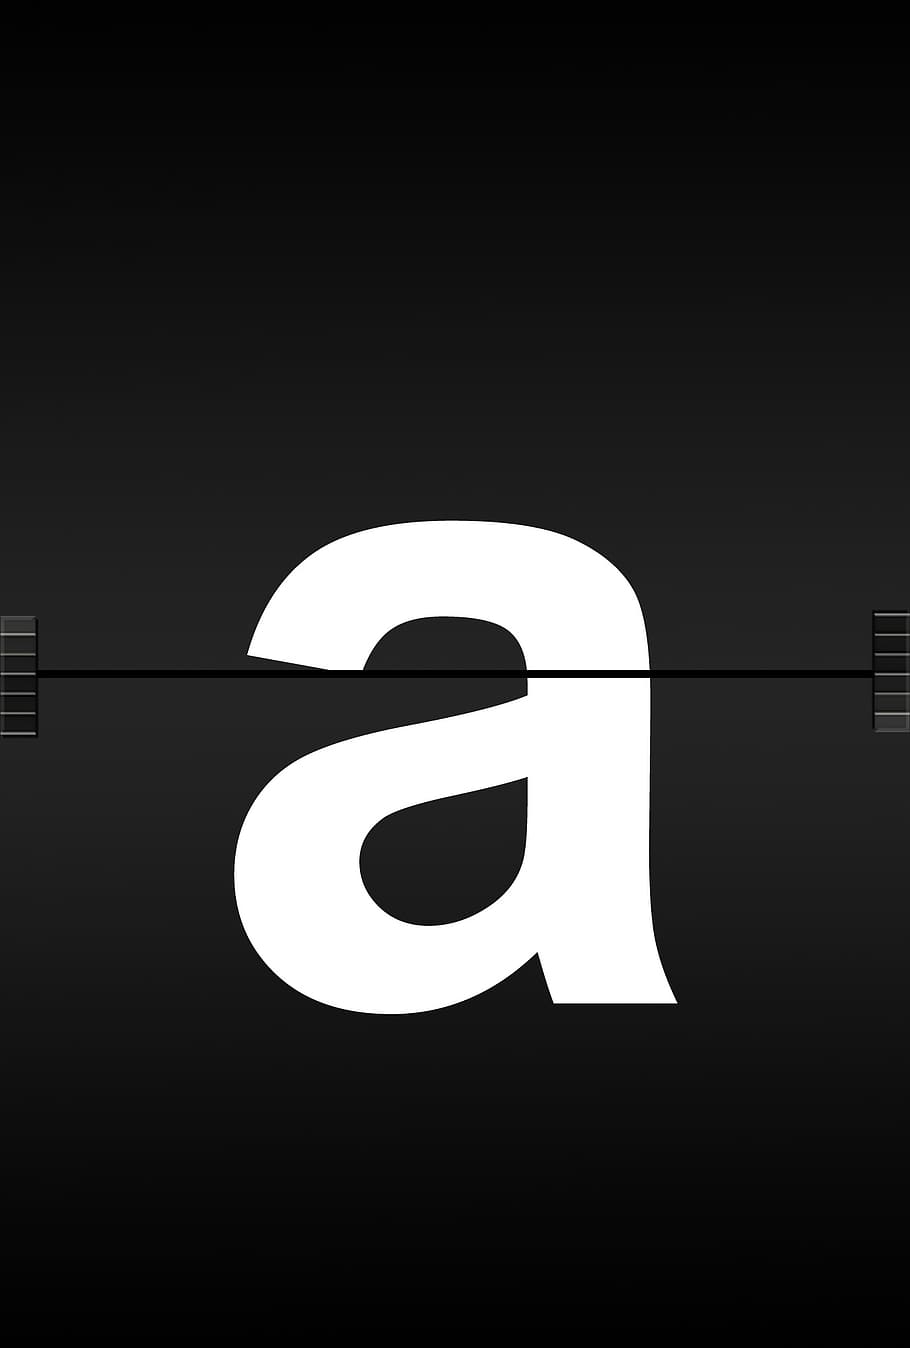 logotipo da amazônia, letras, alfabeto, fonte do diário, aeroporto, placar, anúncio, estação ferroviária, conselho de administração, escola